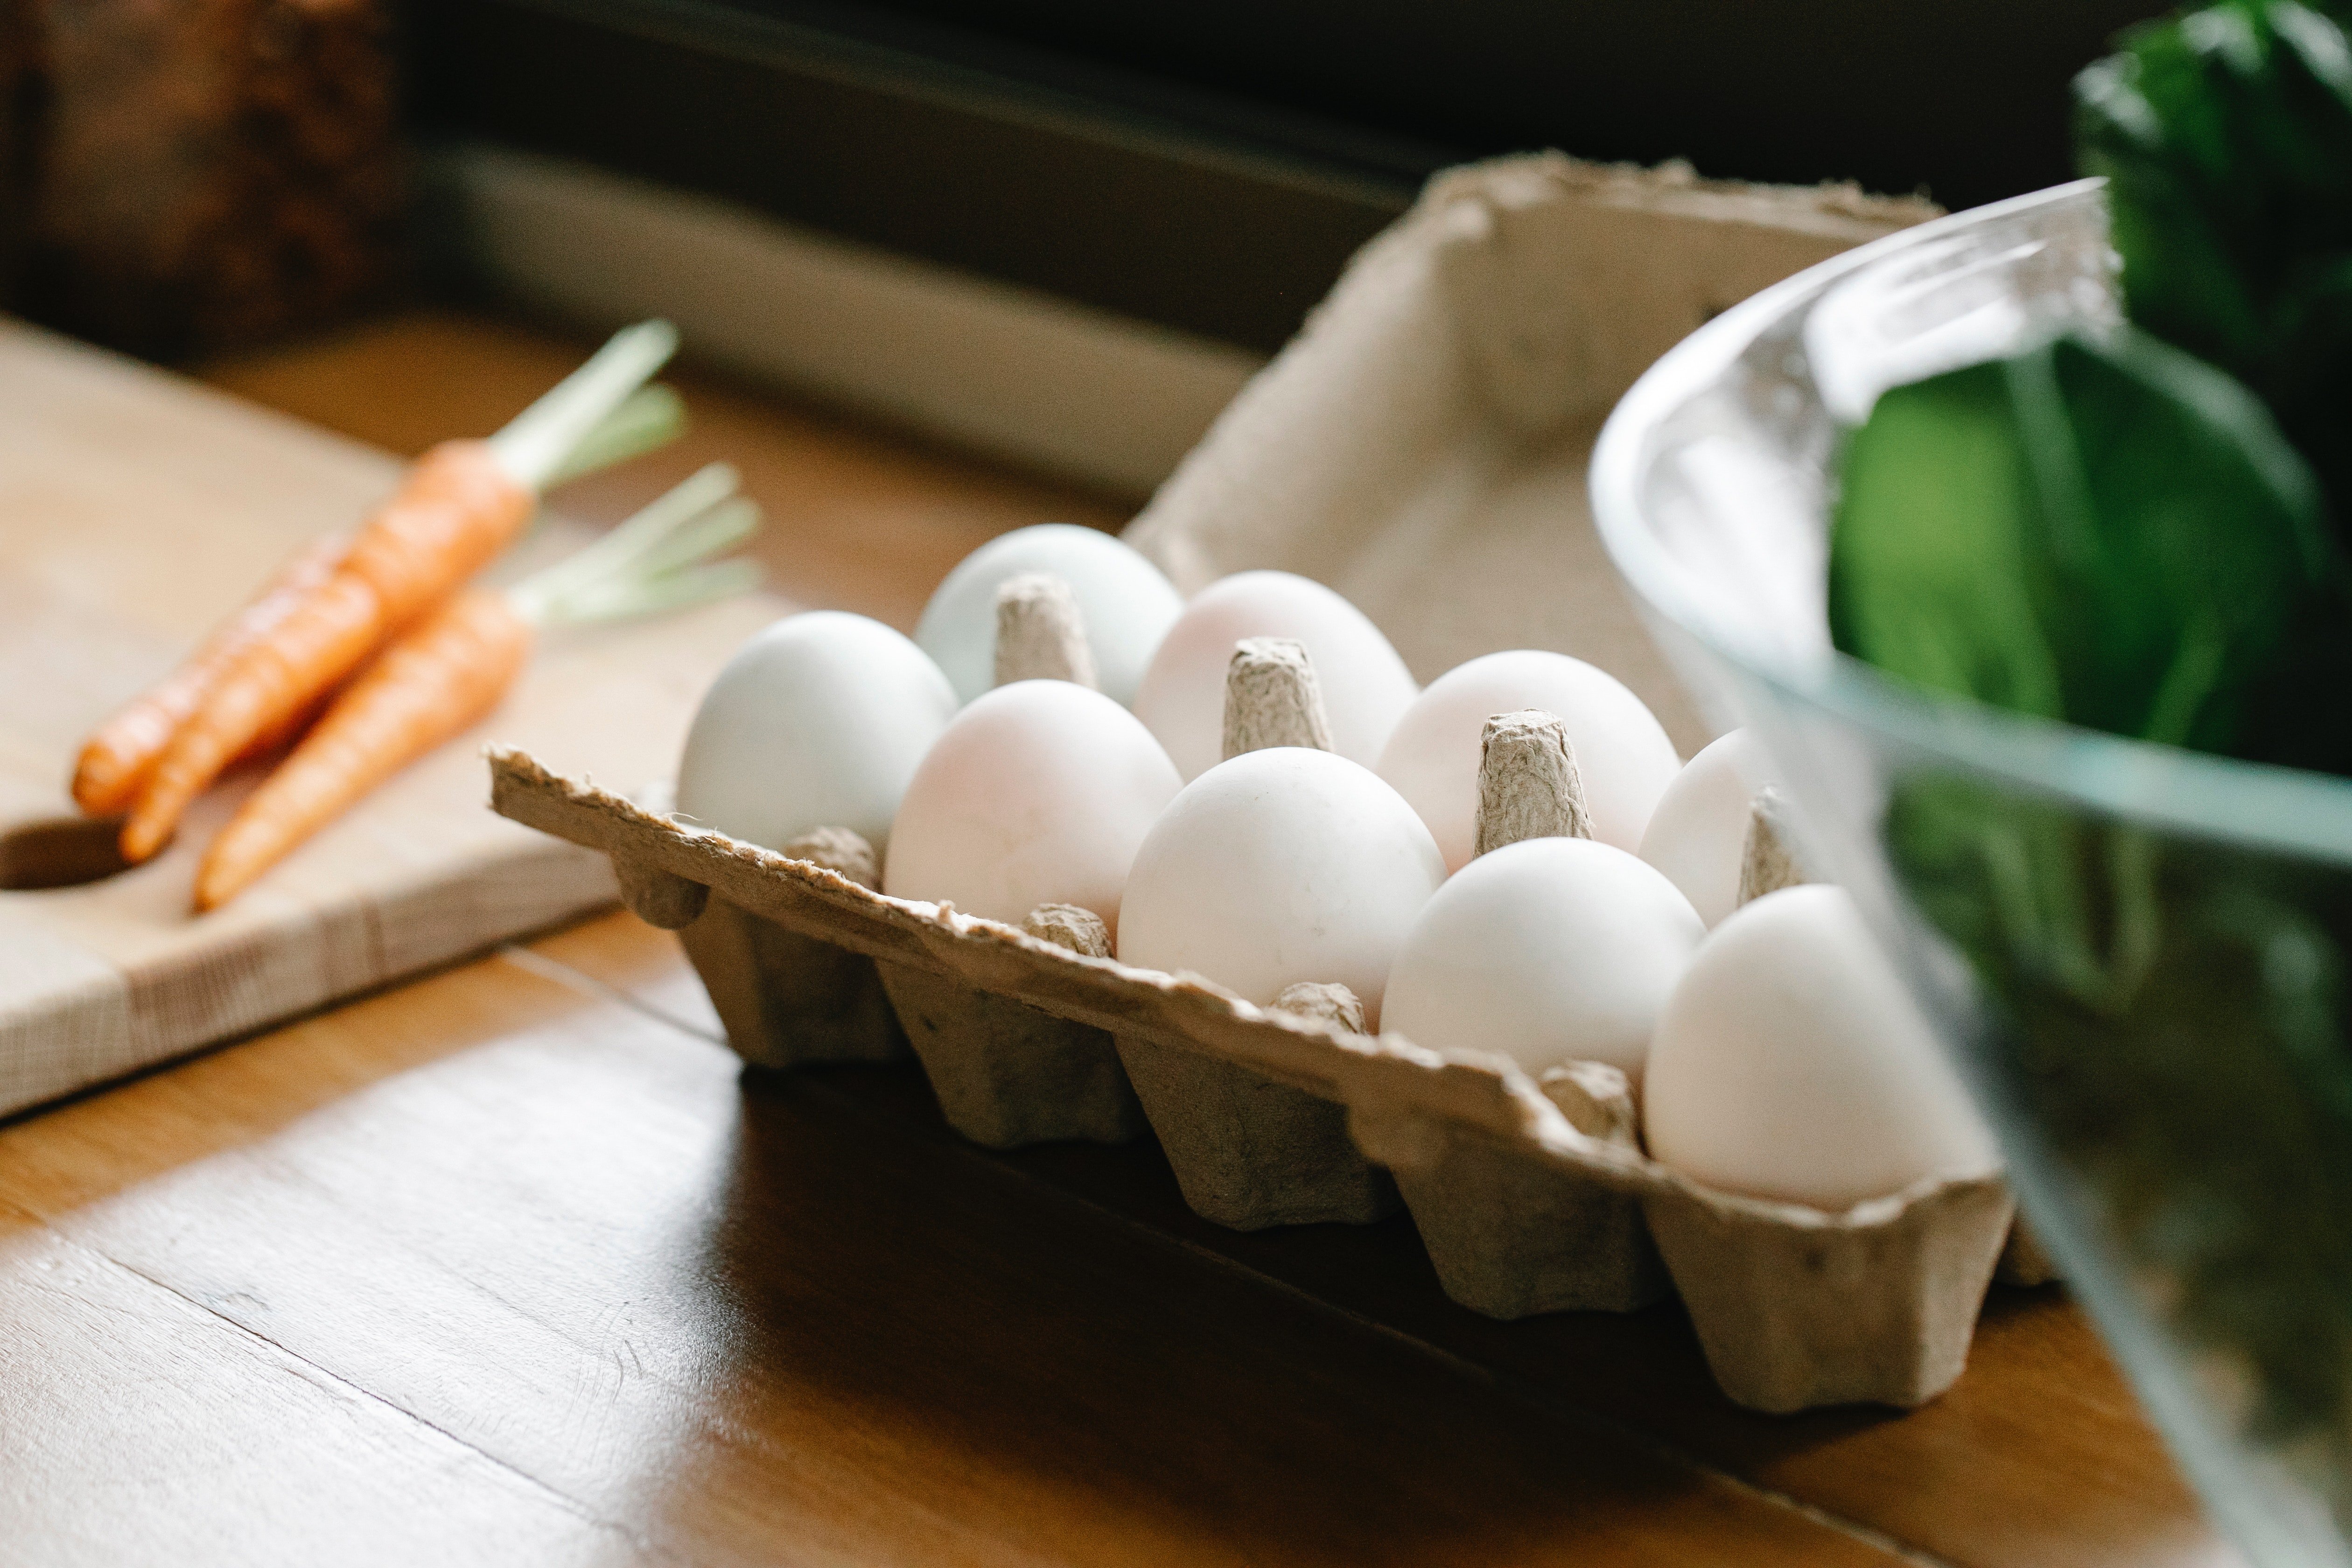 Eier in Schachtel auf Küchentisch gelegt | Quelle: Pexels